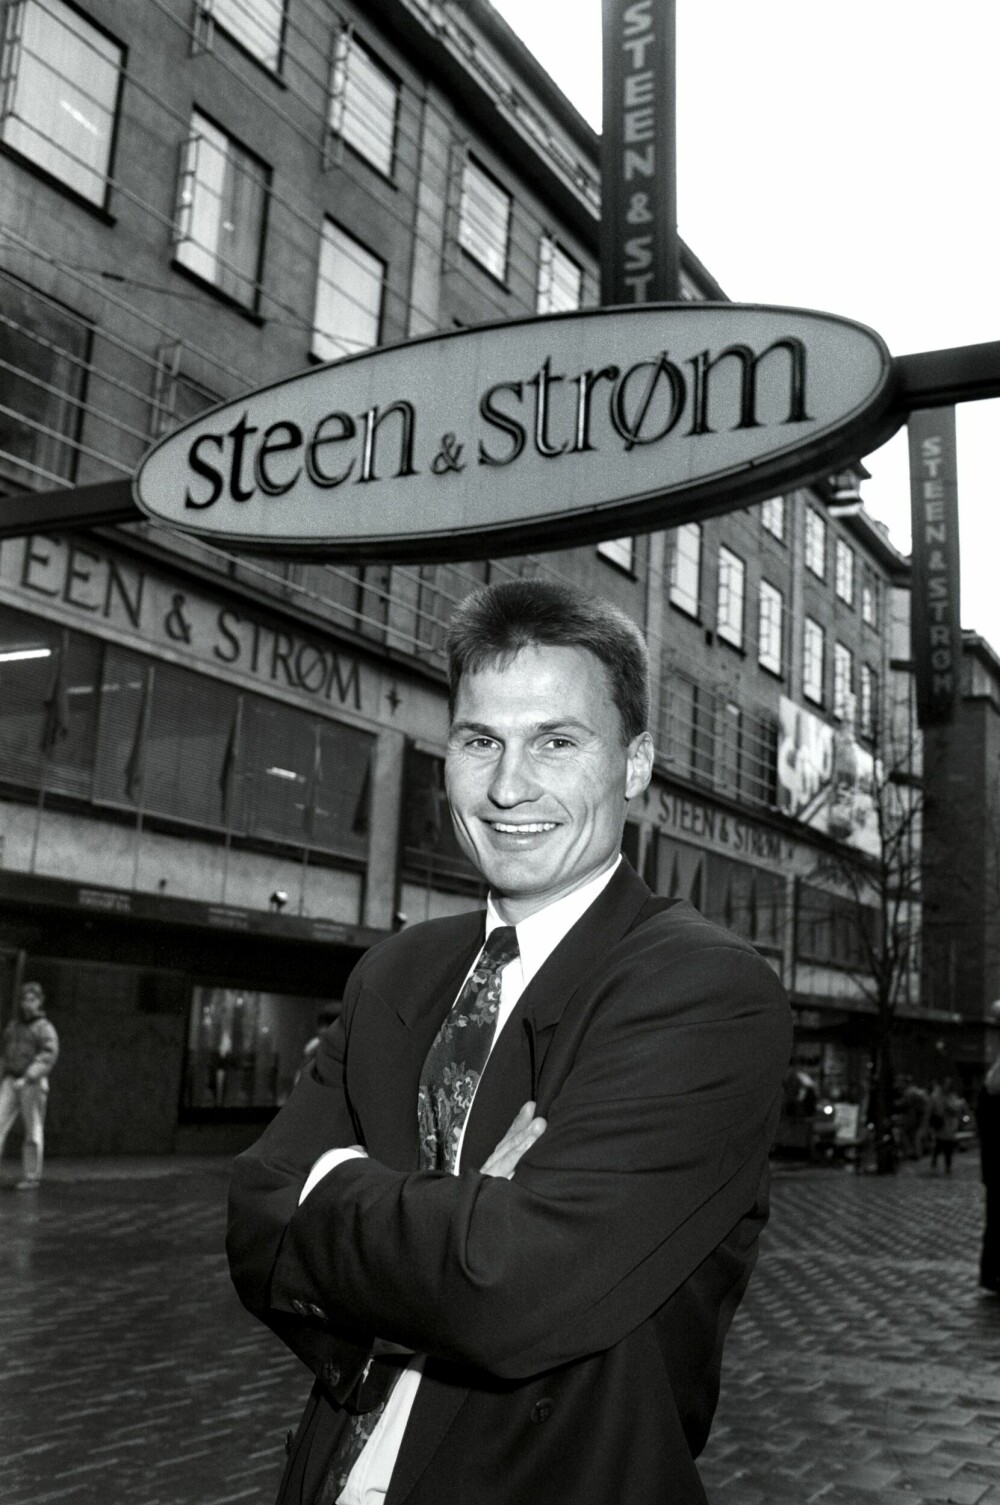 <b>DEN GANG DA:</b> Petter reddet Steen &amp; Strøm fra konkurs på 1990-tallet. Da han fikk sparken, bestemte han seg for å prøve noe helt annet enn kjøpesenter-bransjen og kjøpte sitt første hotell.